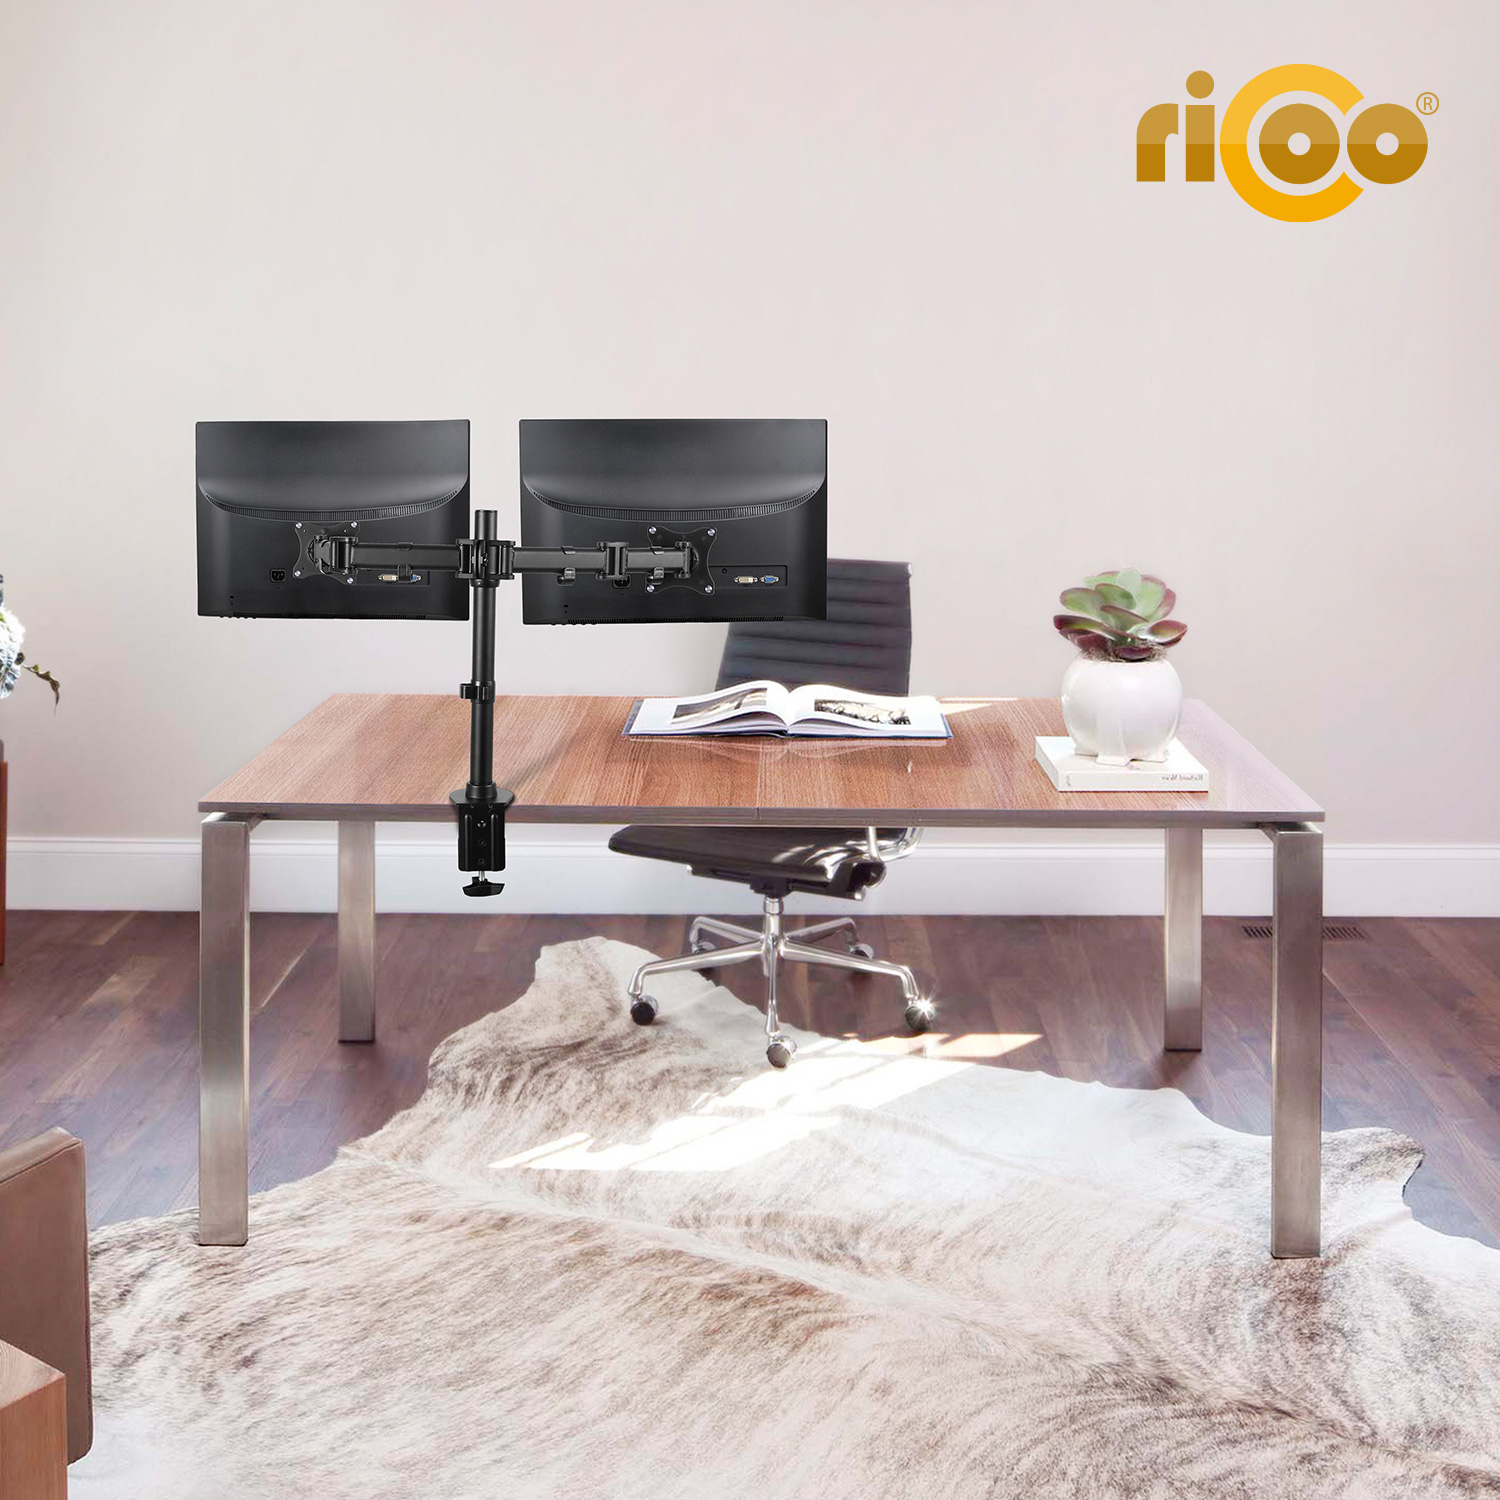 schwarz RICOO Tischhalterung, Monitor TS5811